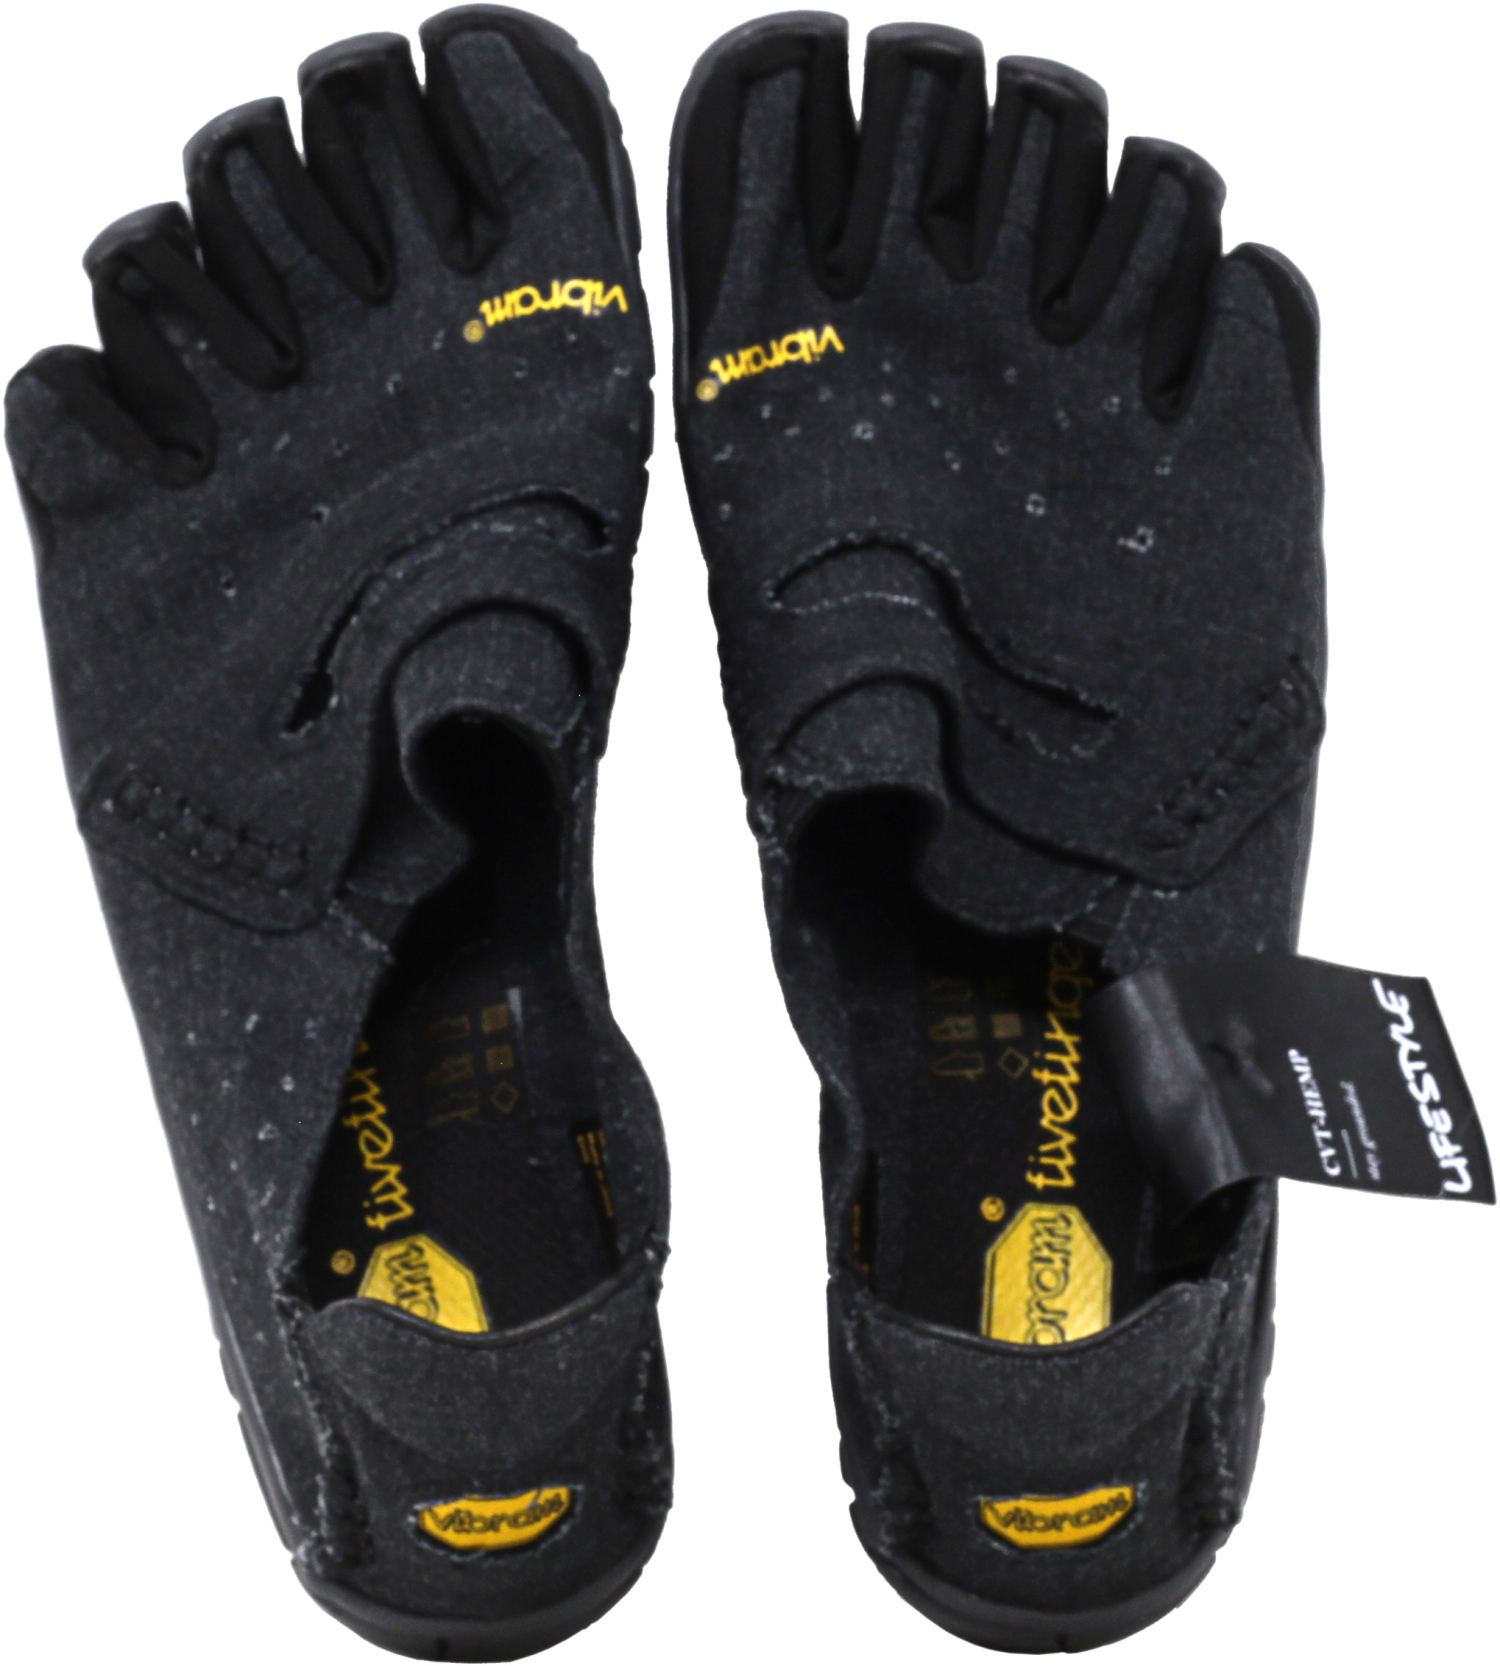 Vibram Five Fingers Men's Cvt-Hemp Ankle-High Slip-On Shoes | eBay